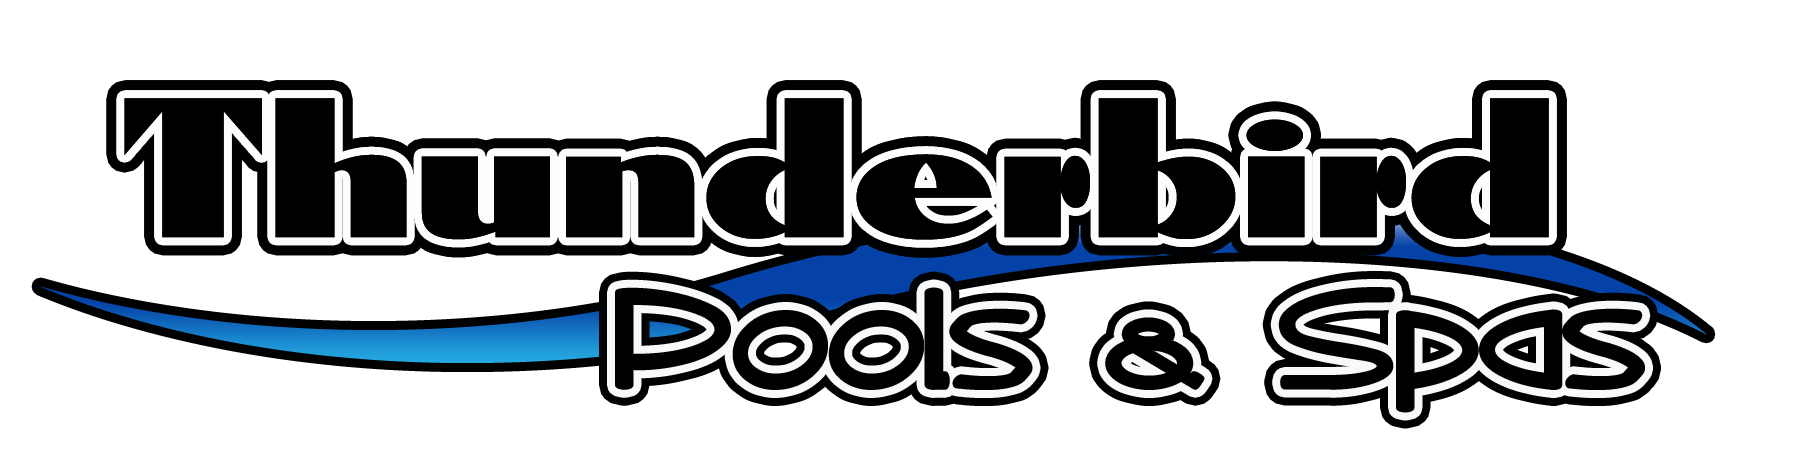 Thunderbird Pools and Spas Company Logo